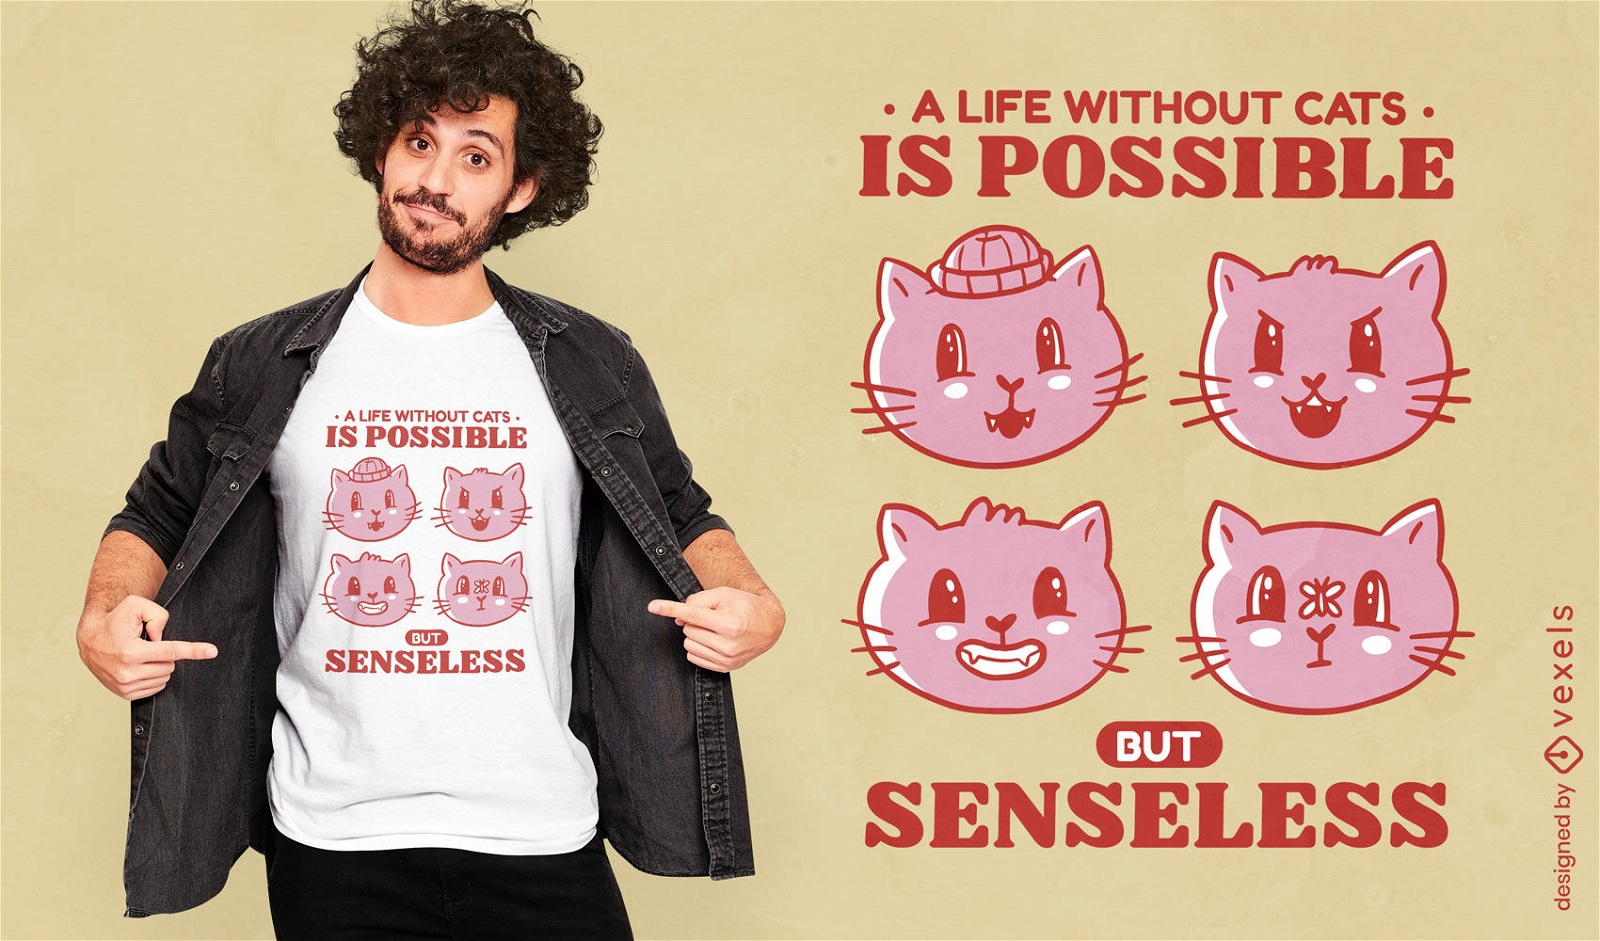 Dise?o de camiseta de vida sin gatos.